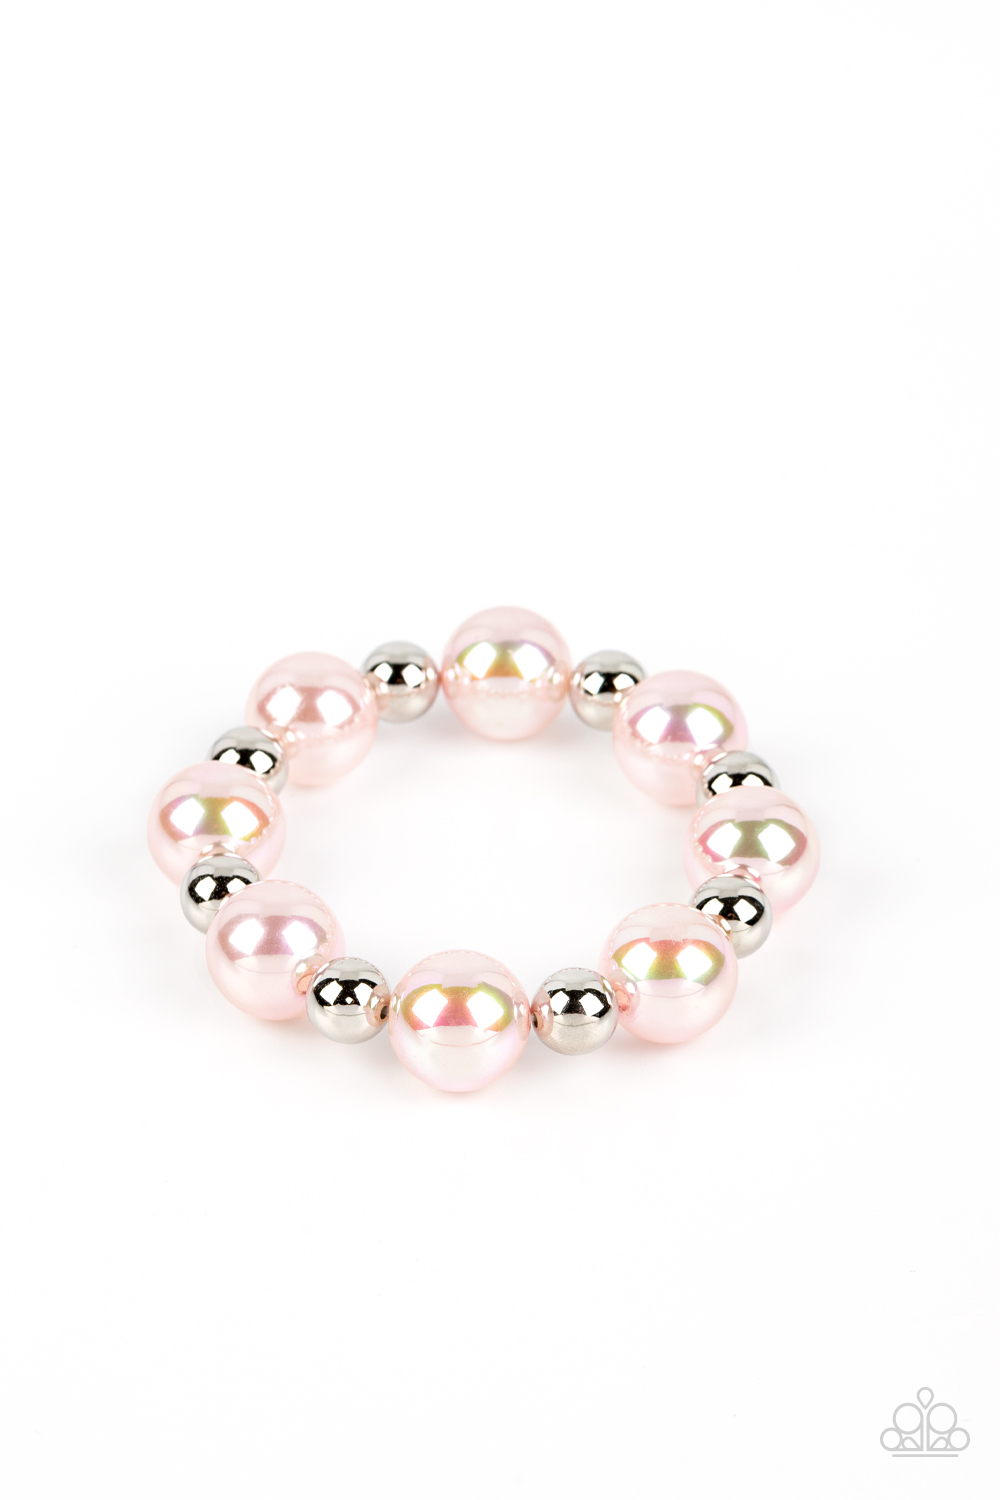 Dreamscape Escape Pink Necklace & Bracelet Set - Paparazzi Accessories